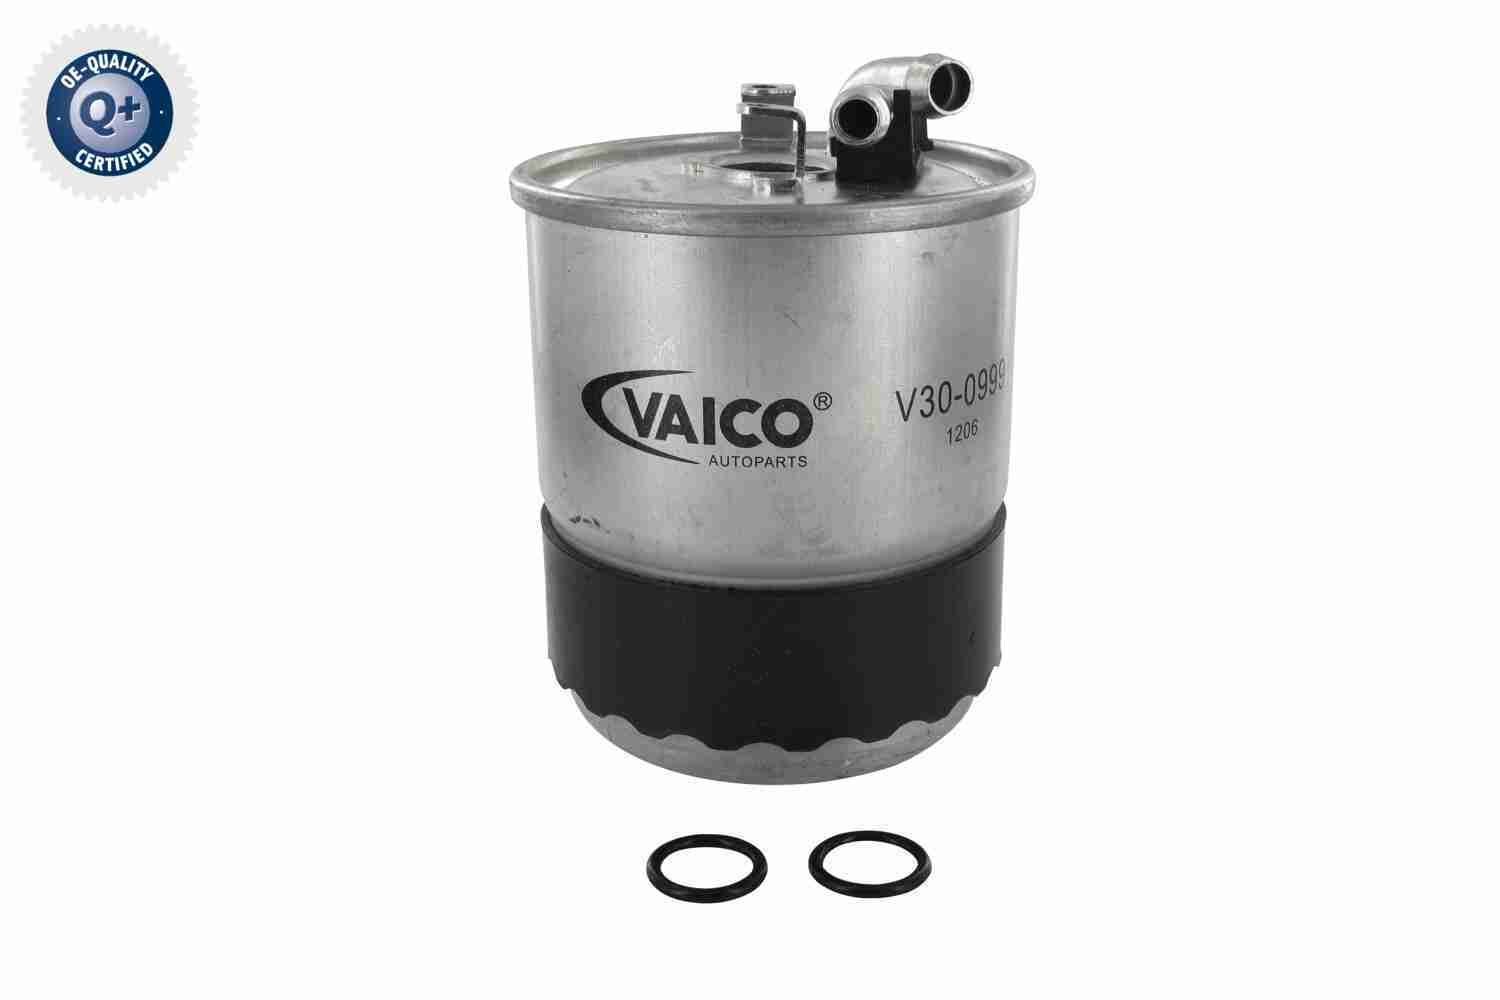 VAICO V30-0999 Filtro carburante Filtro ad avvitamento, 10mm, 8mm, Q+ qualità di primo fornitore